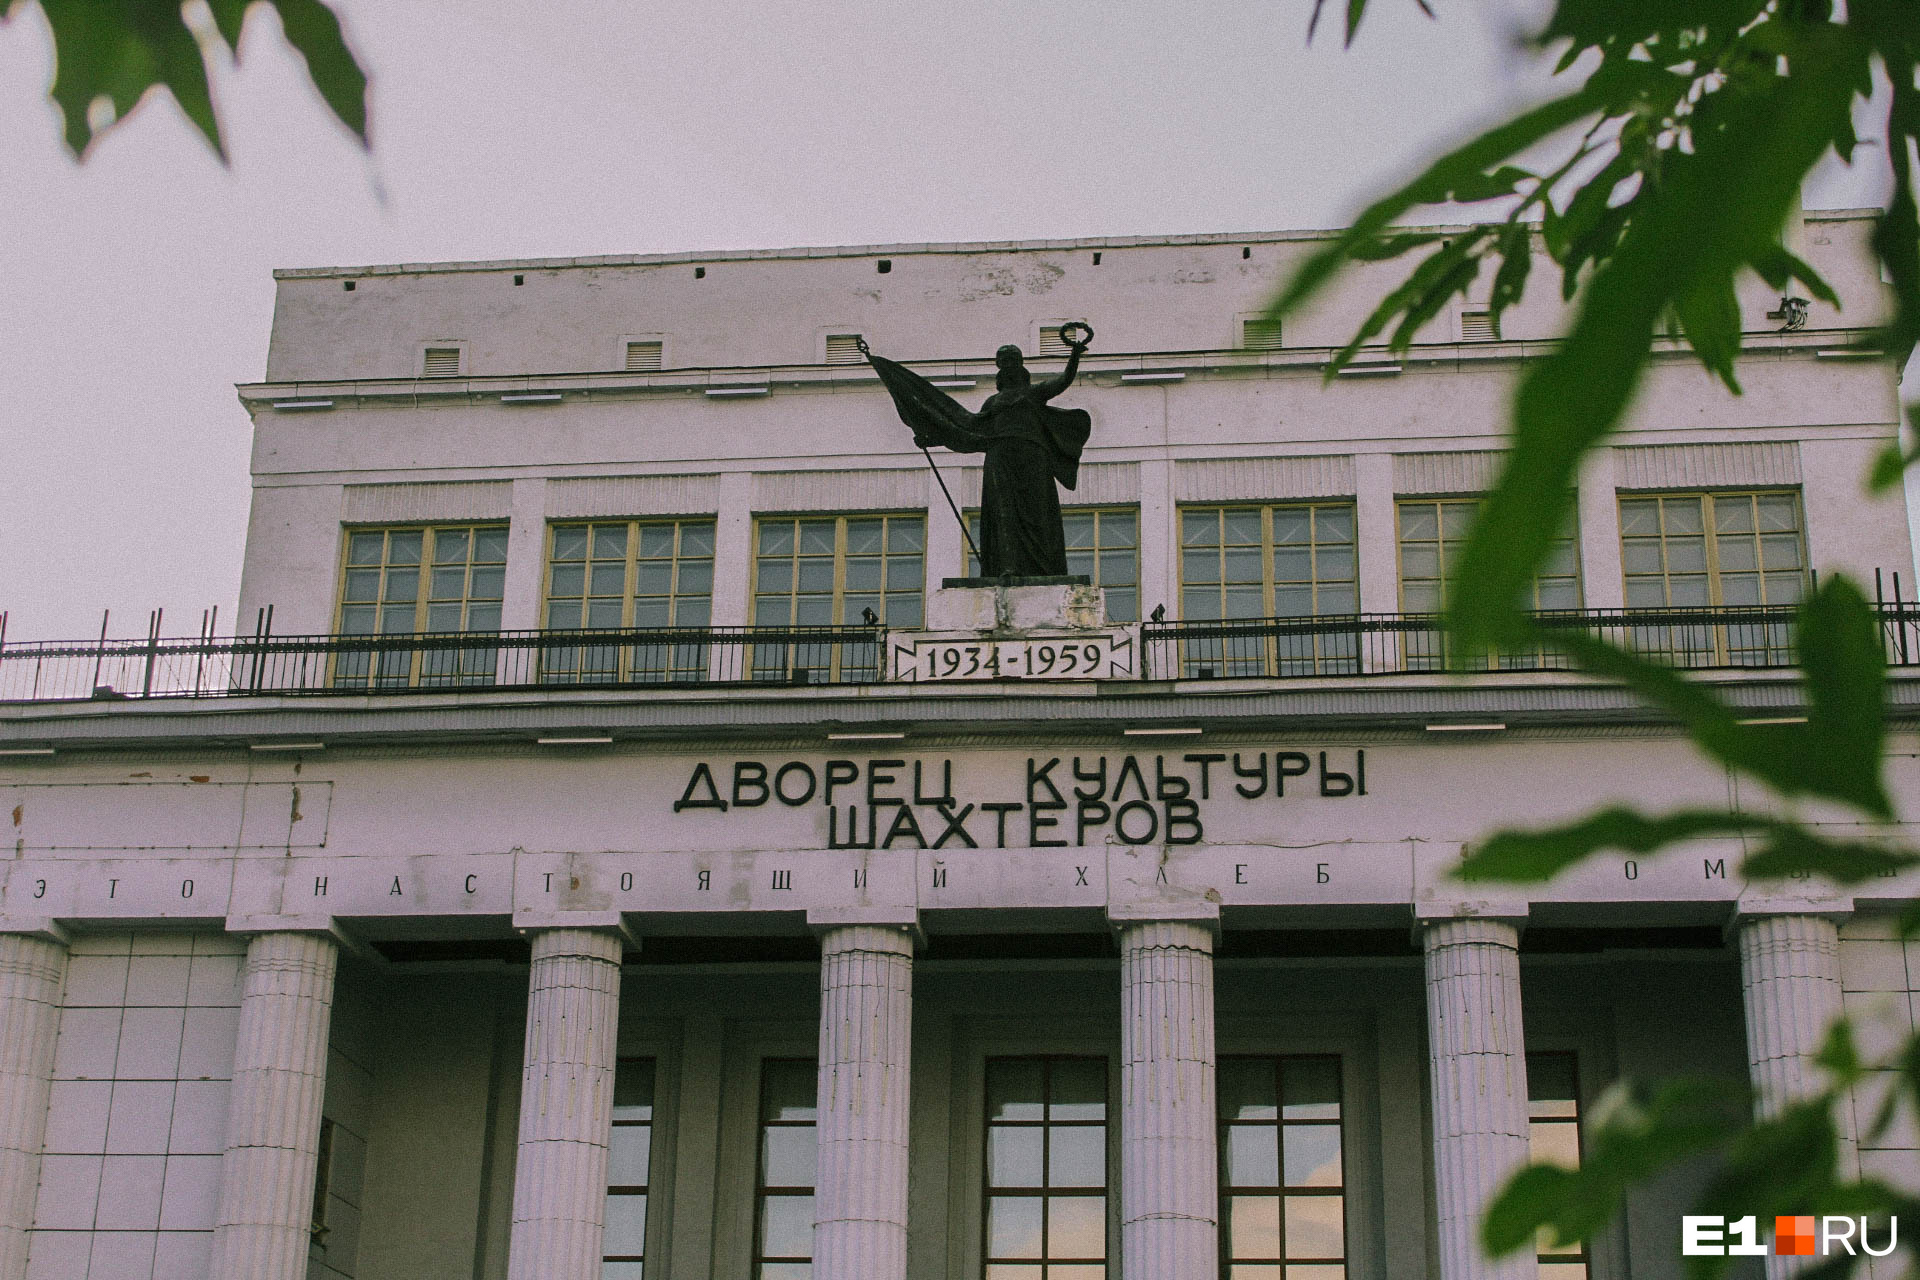 Надпись на здании «1934–1959» символизирует то, что дворец был построен к 25-летию Печорского угольного бассейна